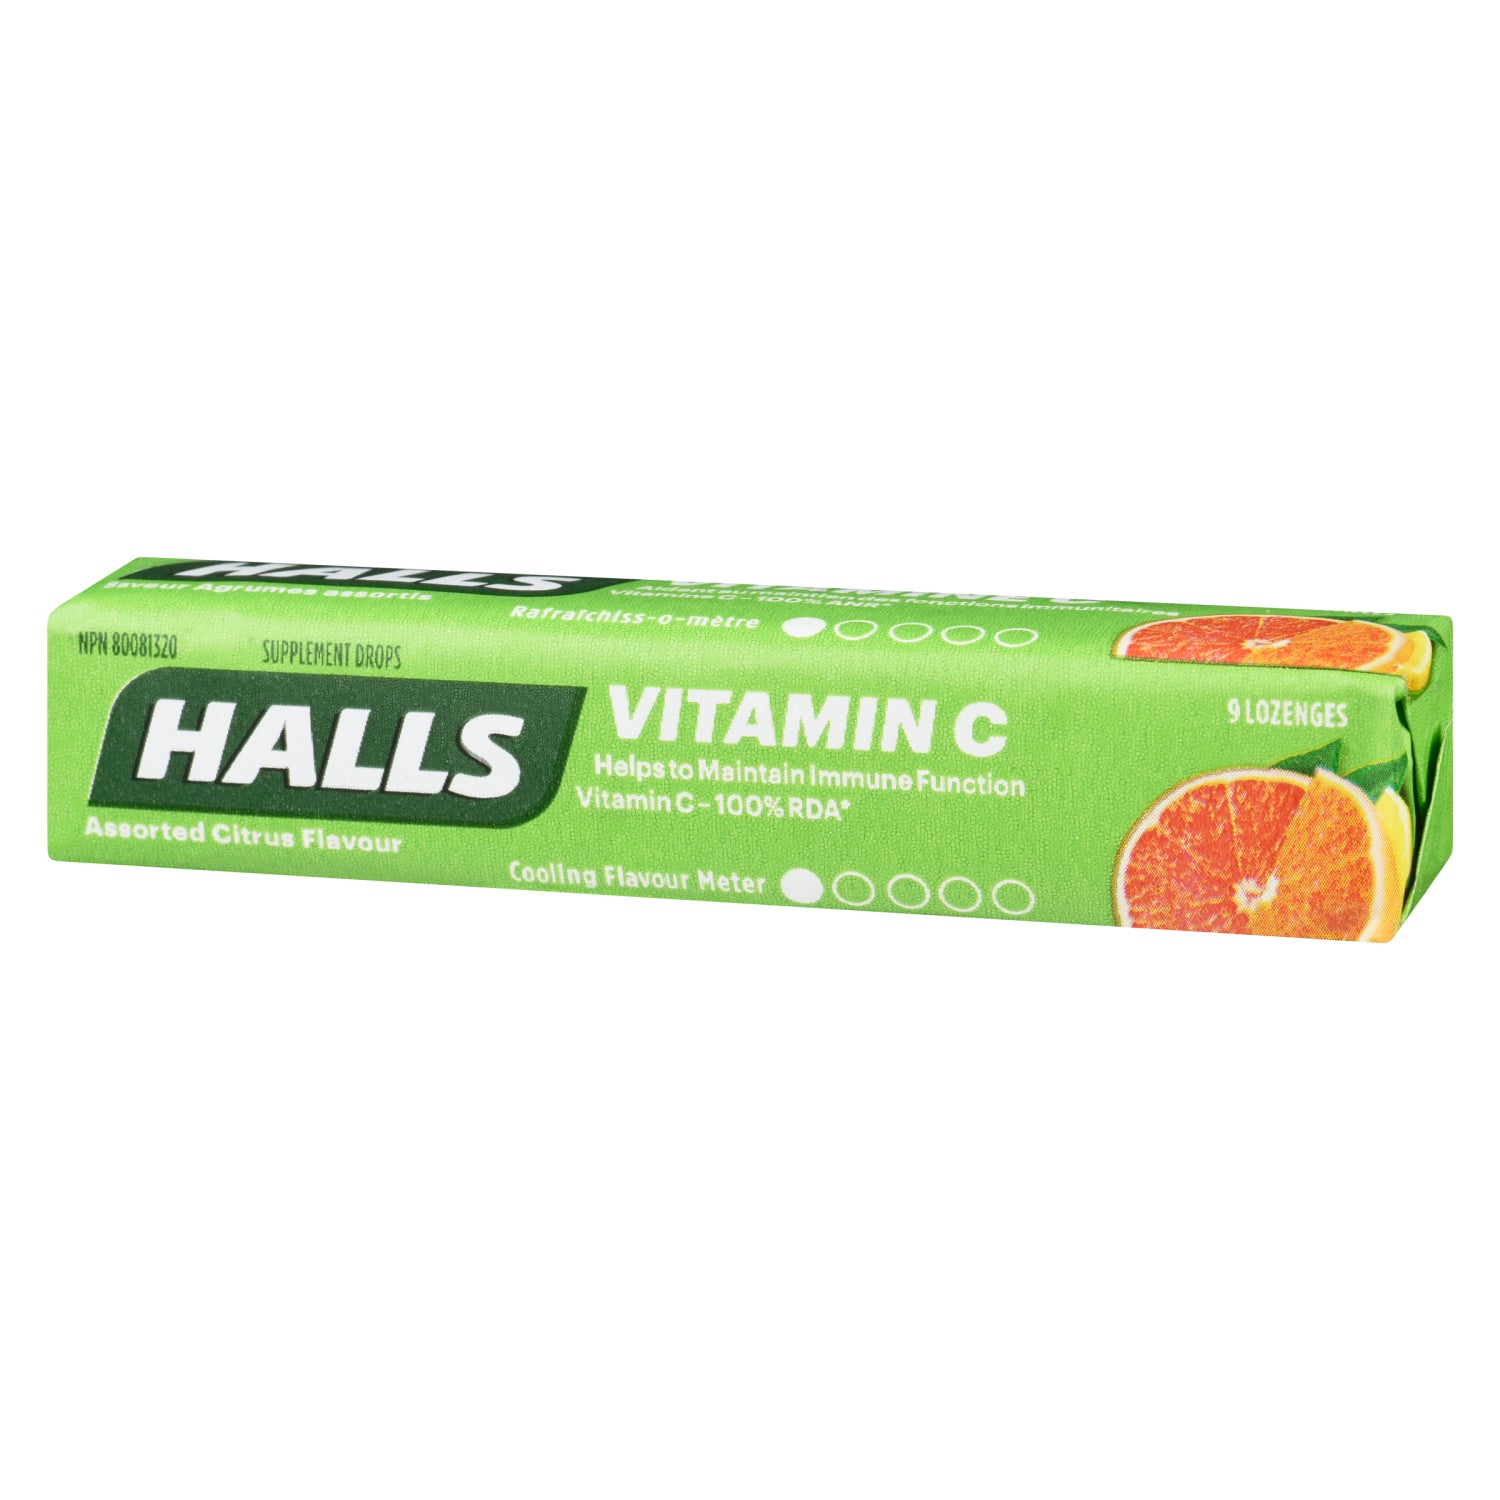 Halls Supplement Drops 9 Drops Assorted Citrus Flavour